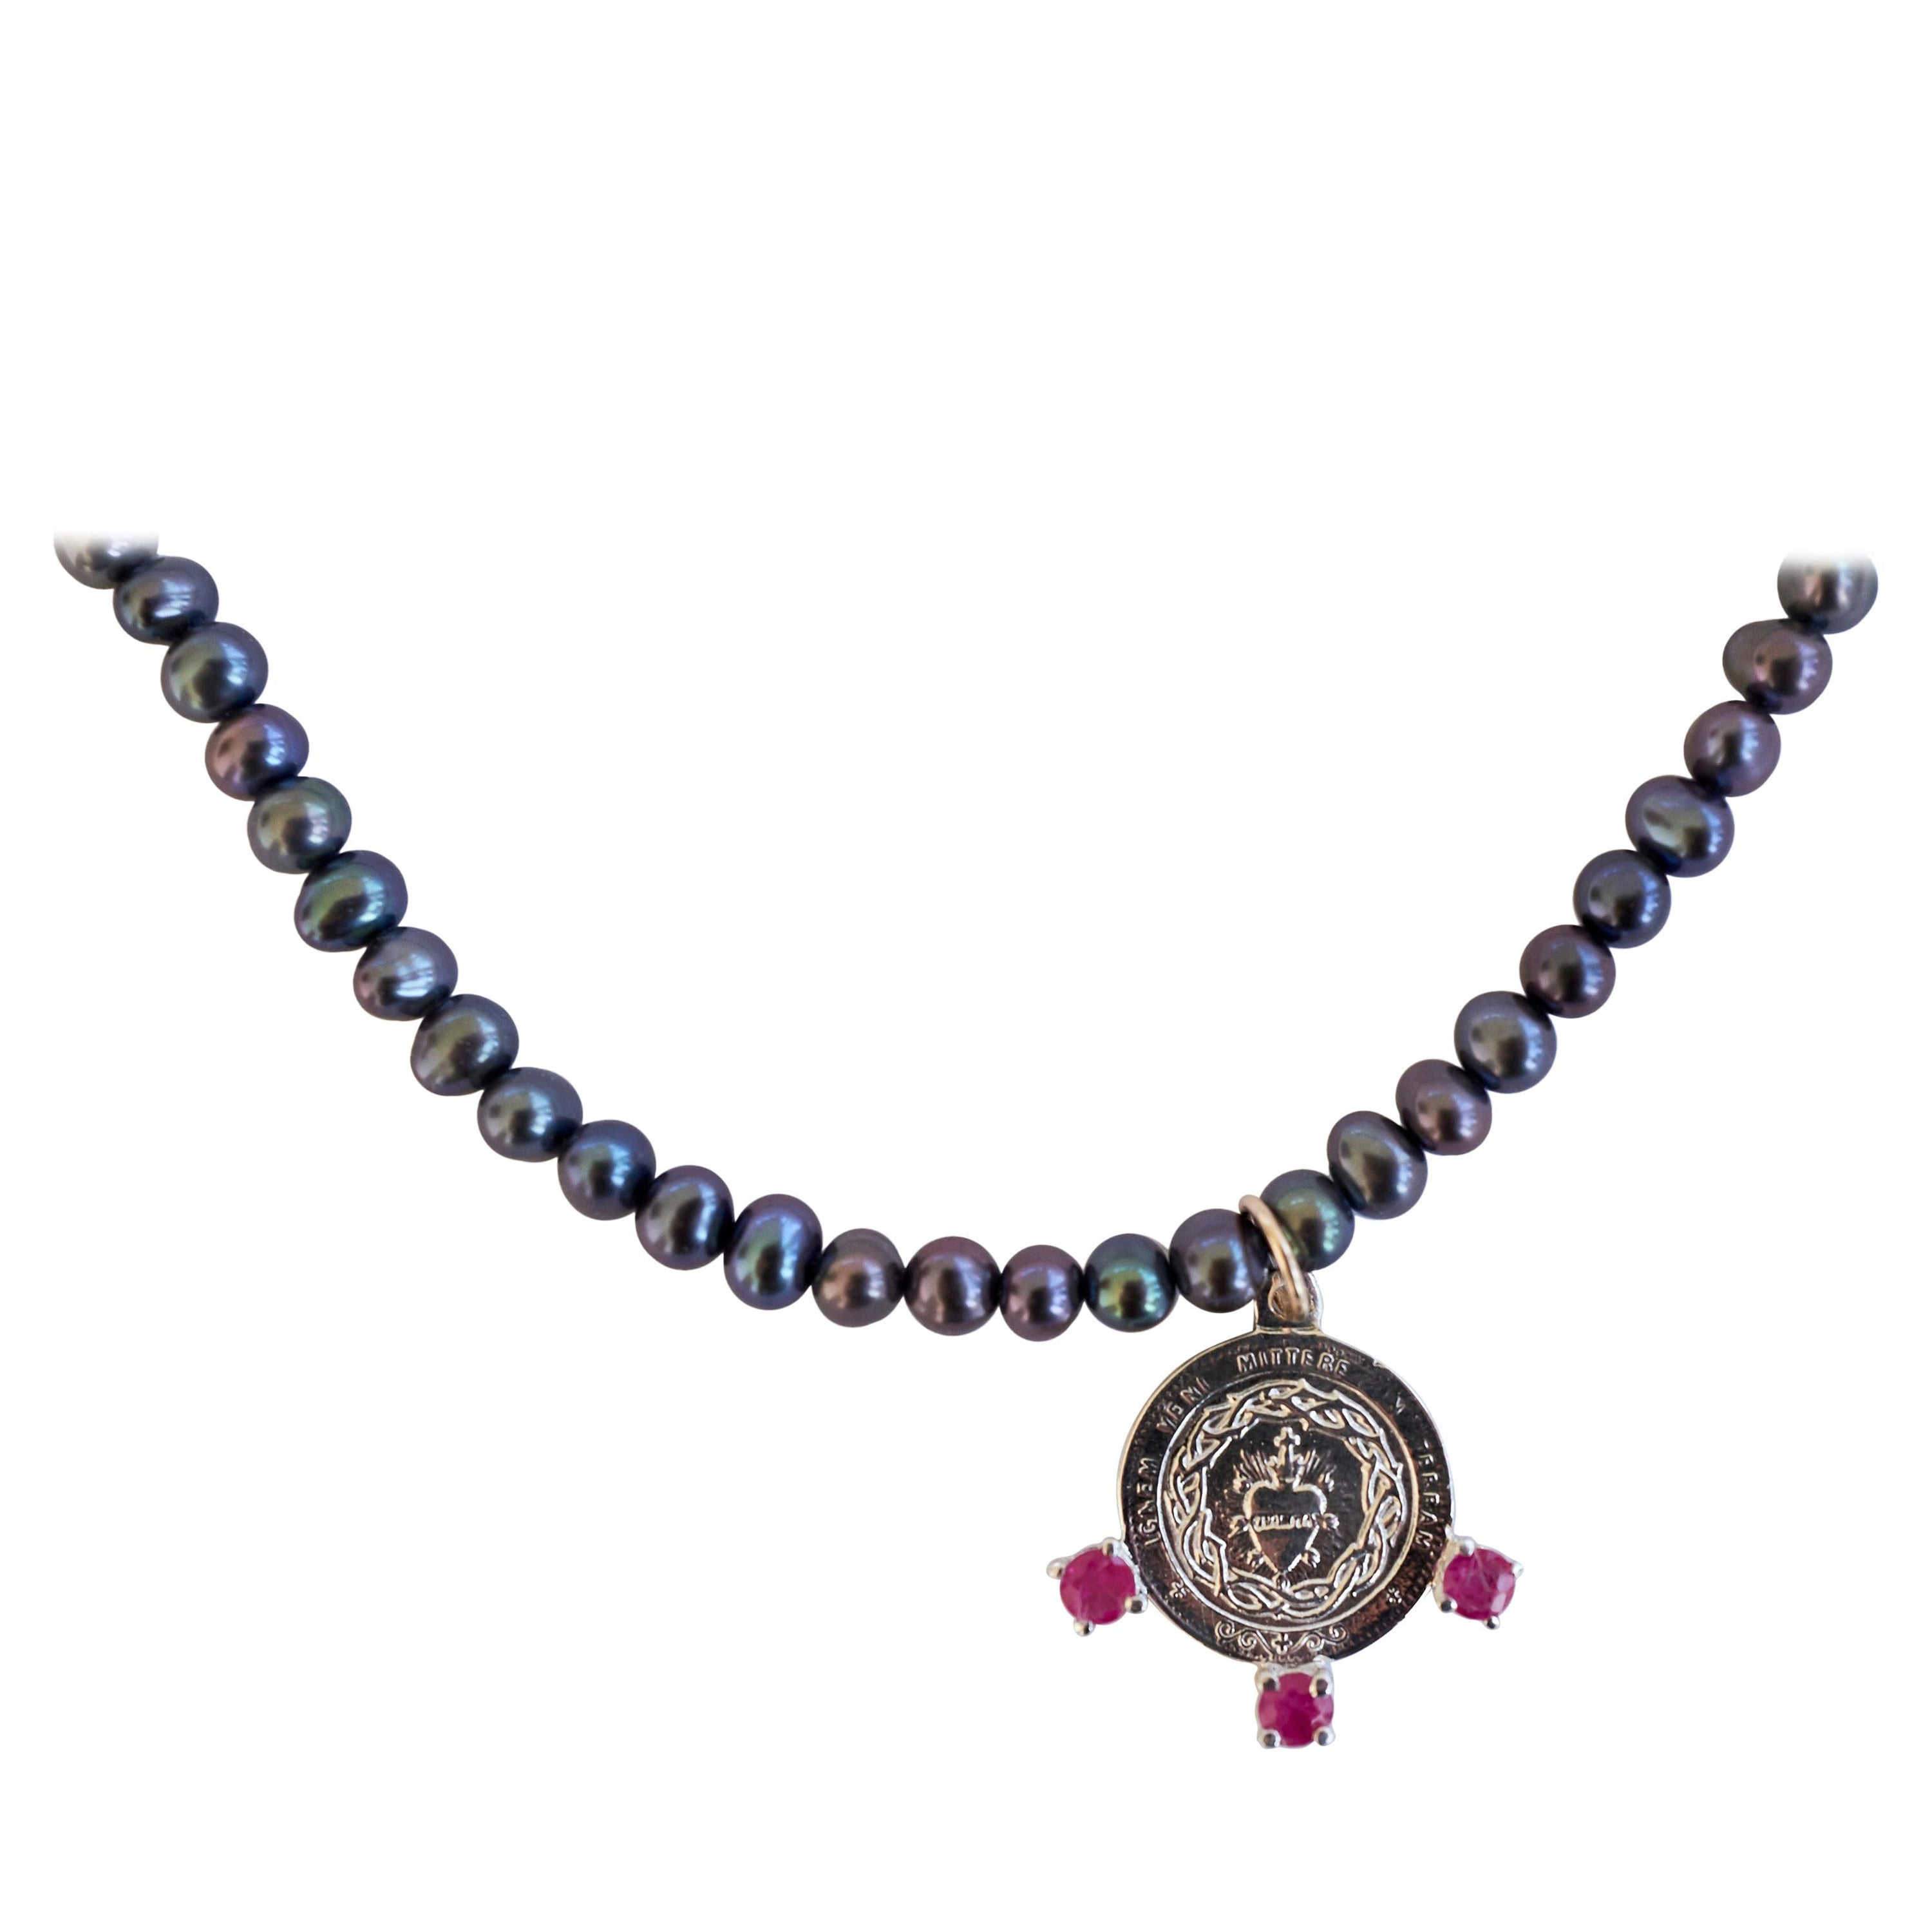 Perle noire Médaille du Sacré-Cœur Tourmaline rose Collier chaîne argent J Dauphin